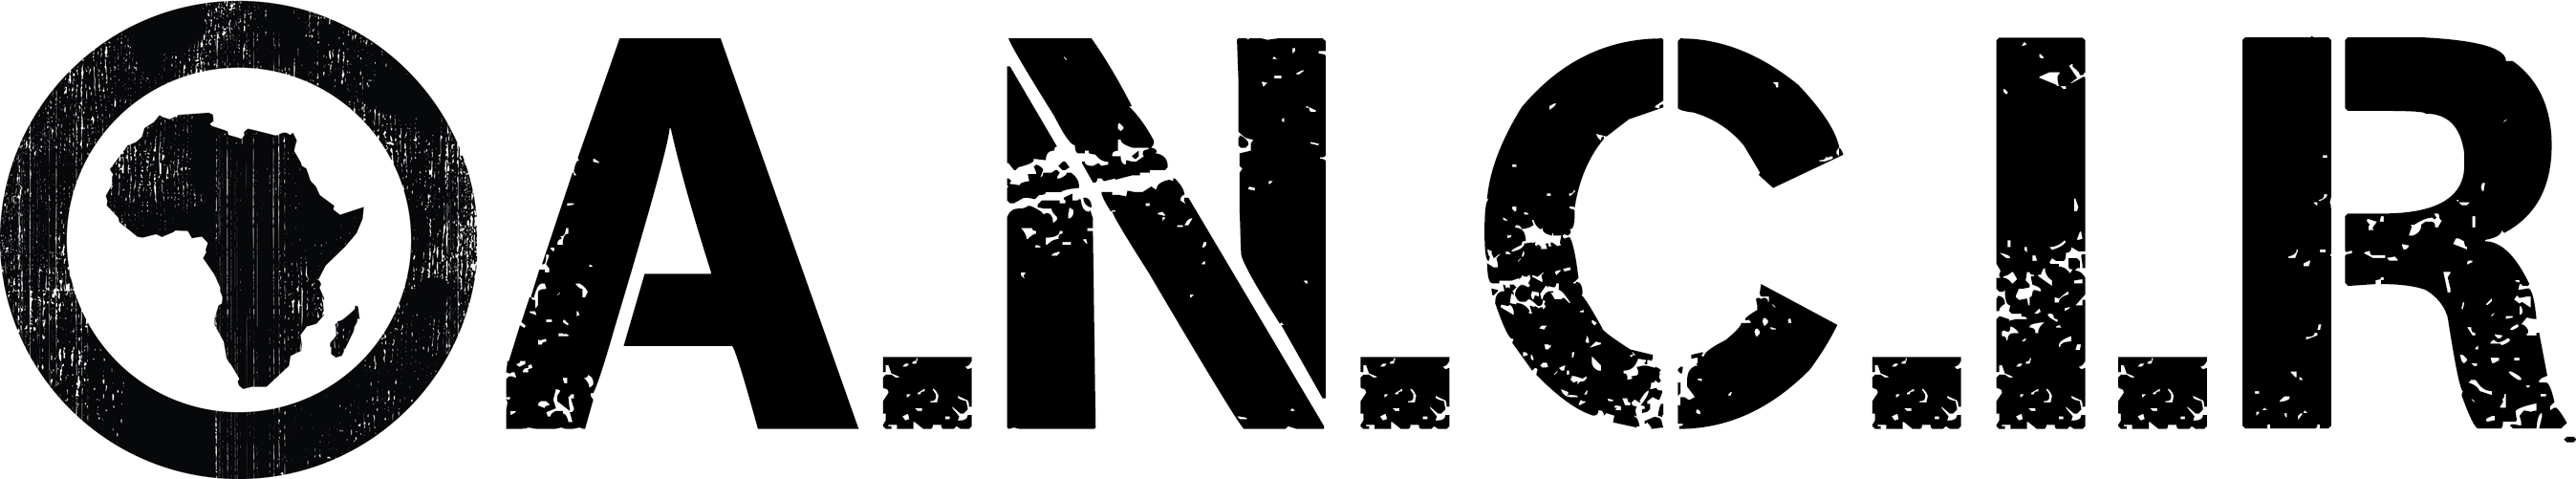 ANCIR logo